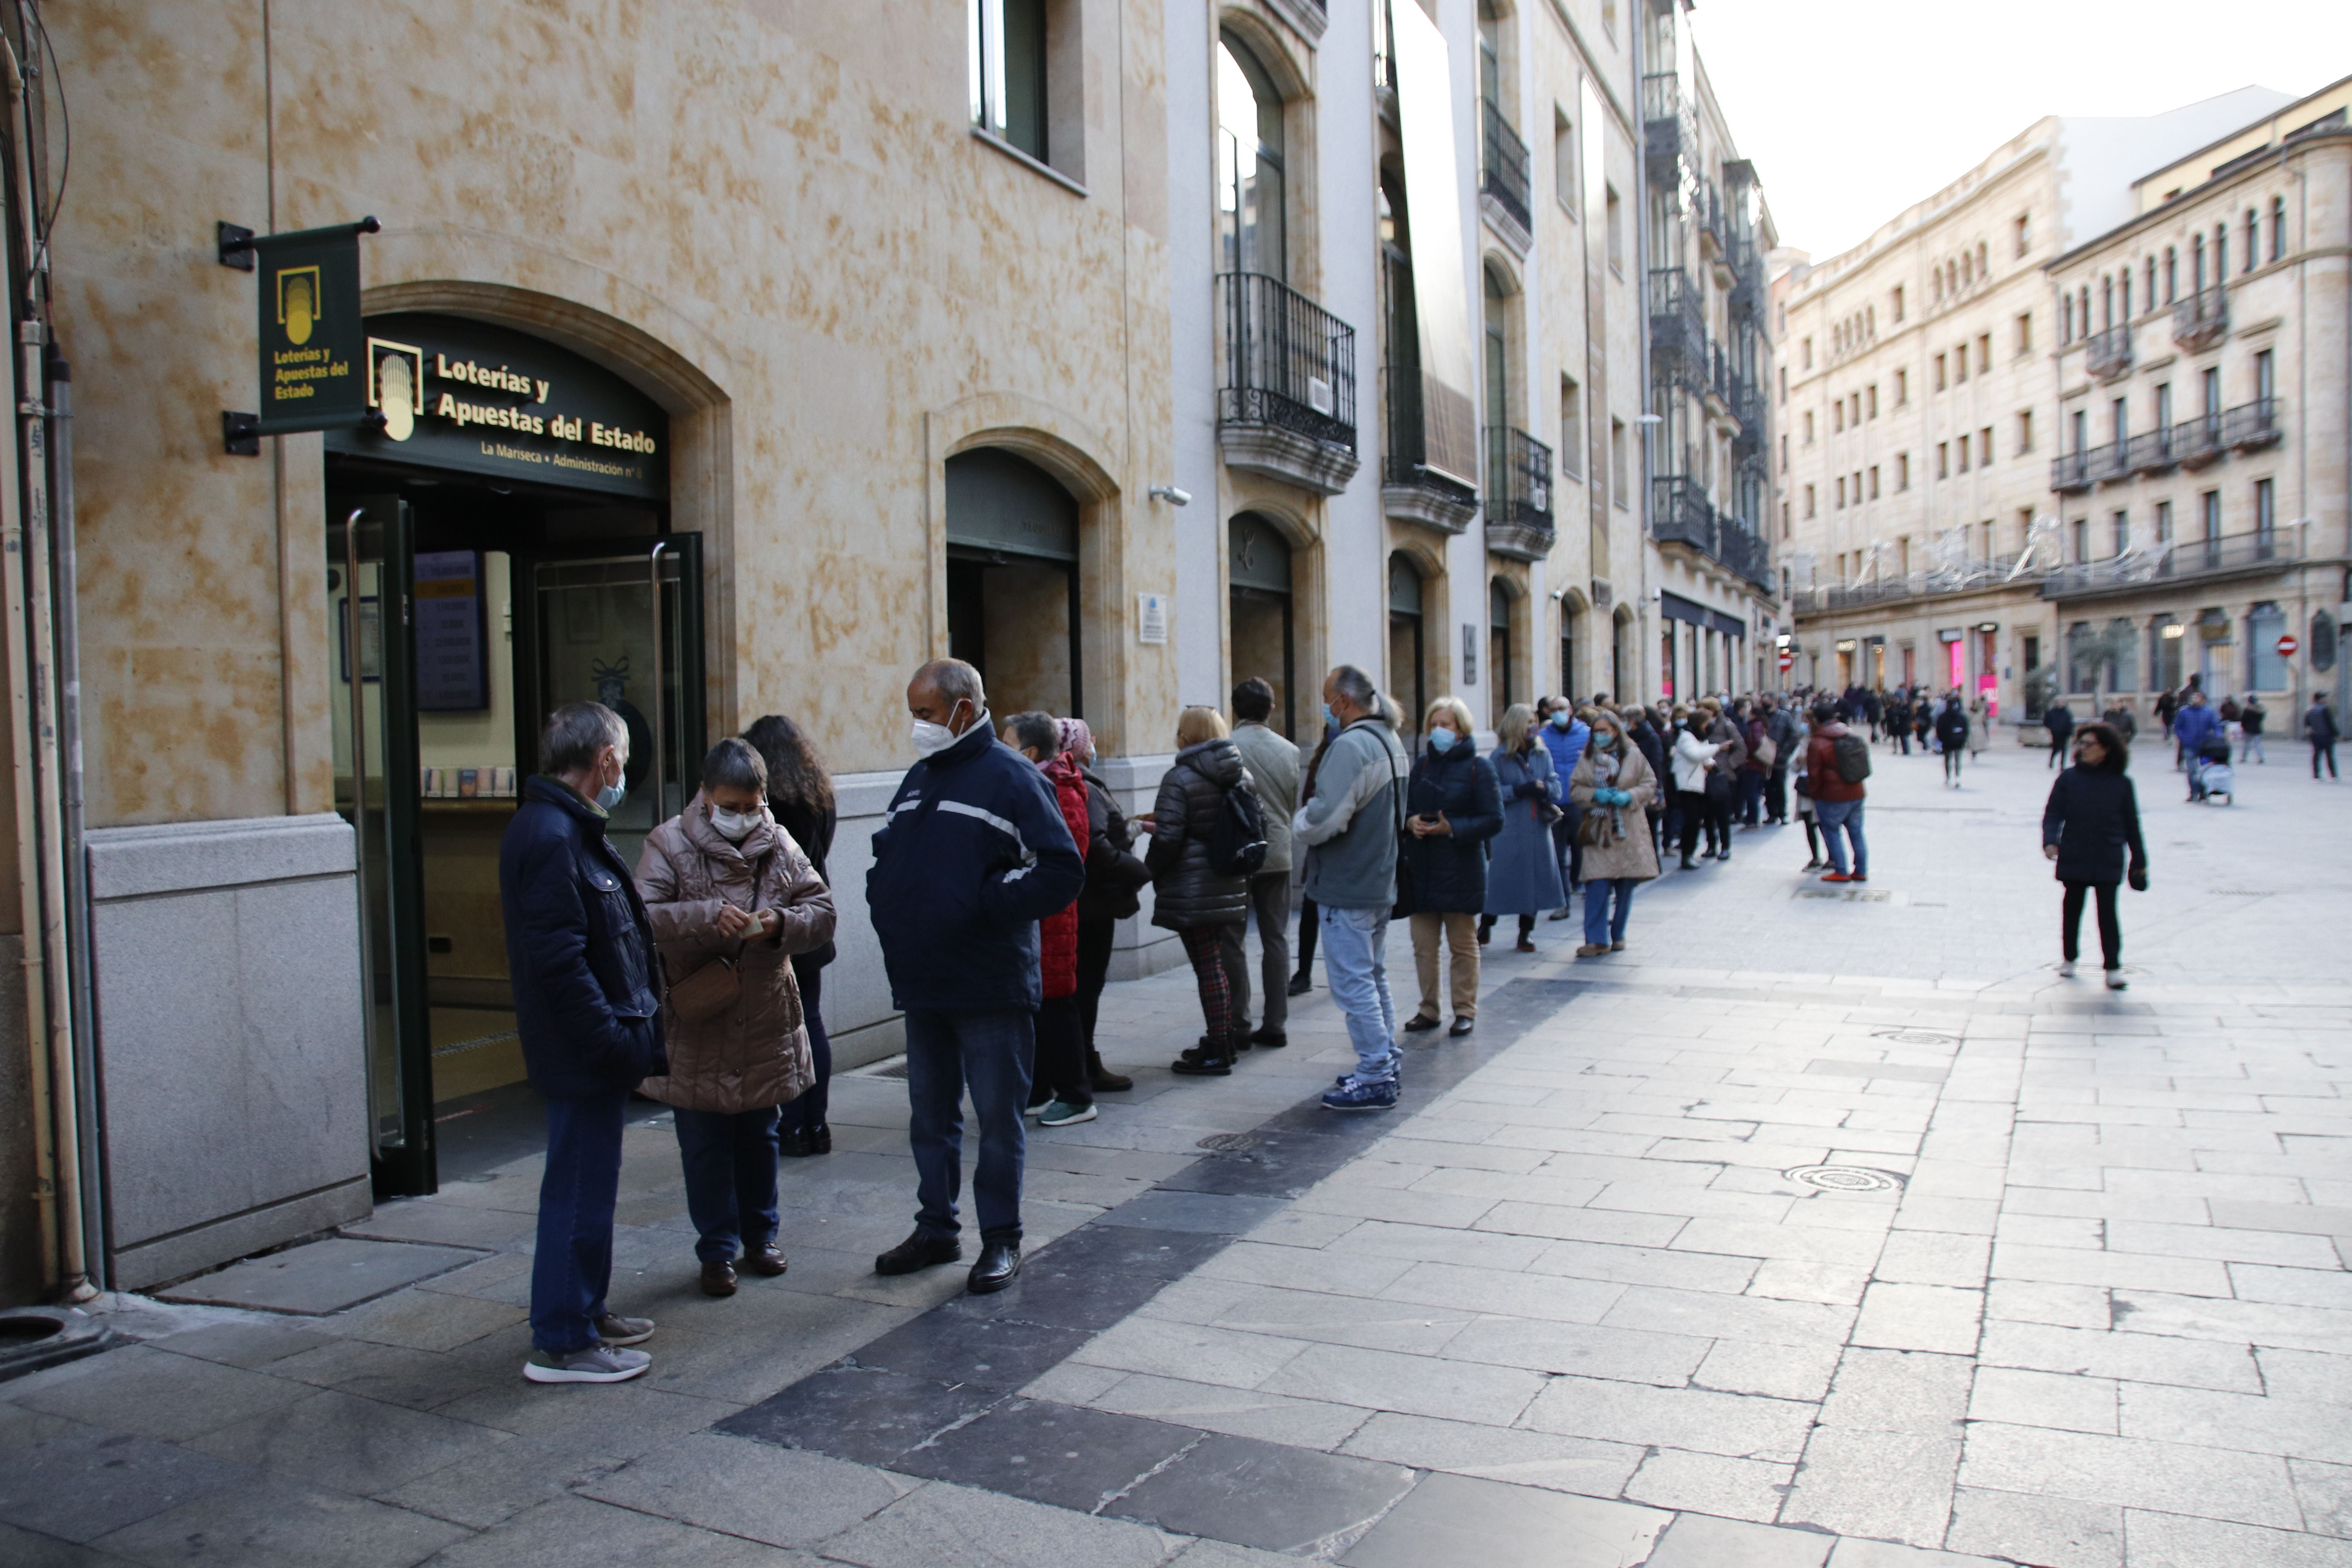 Colas infinitas para comprar la lotería de navidad de la Universidad de Salamanca 